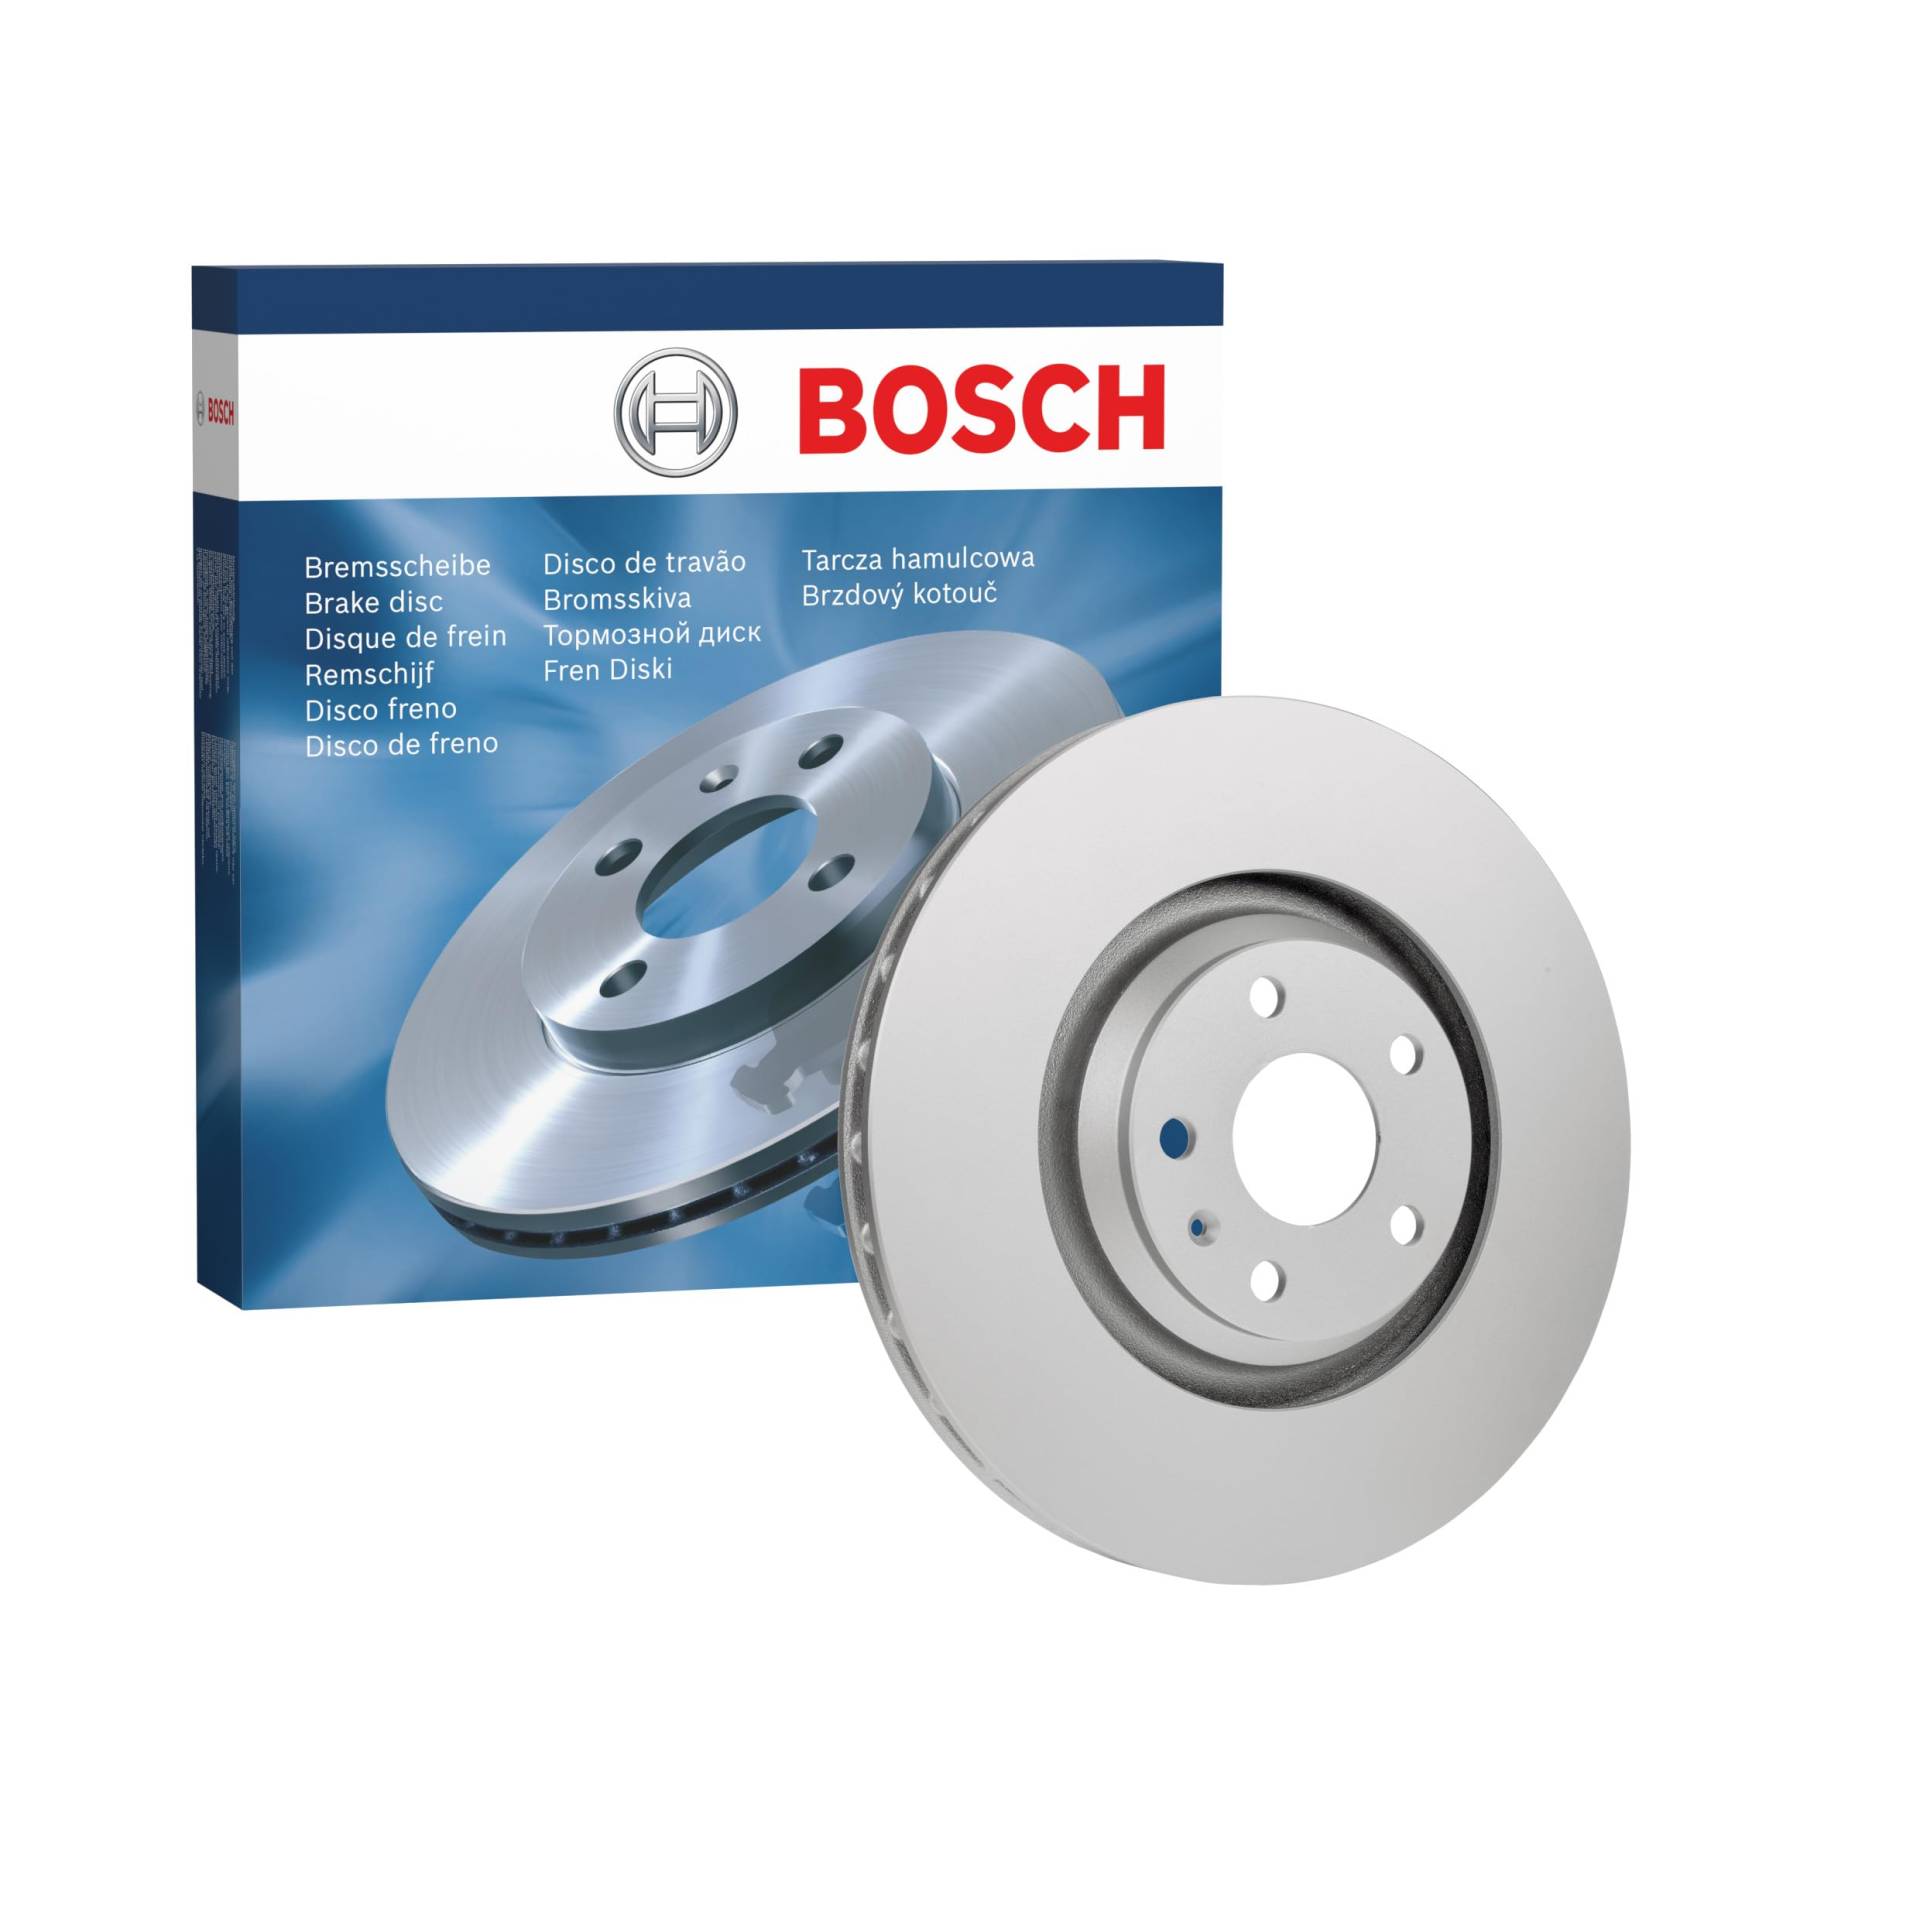 Bosch BD1287 Bremsscheiben - Vorderachse - ECE-R90 Zertifizierung - eine Bremsscheibe von Bosch Automotive